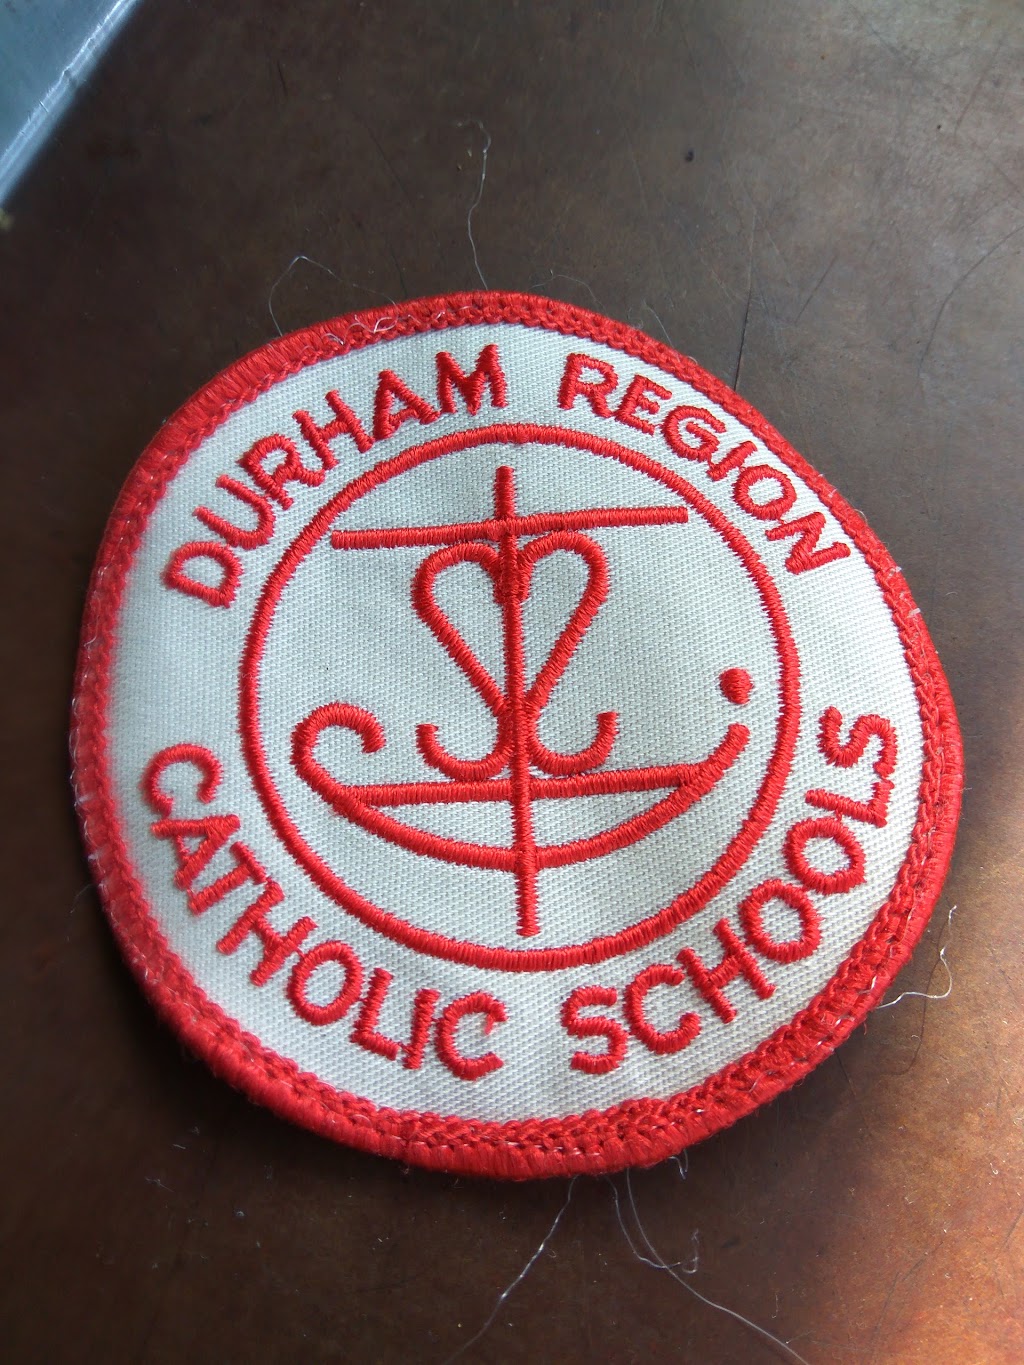 Durham Catholic District School Board 650 Rossland Rd W, Oshawa, ON